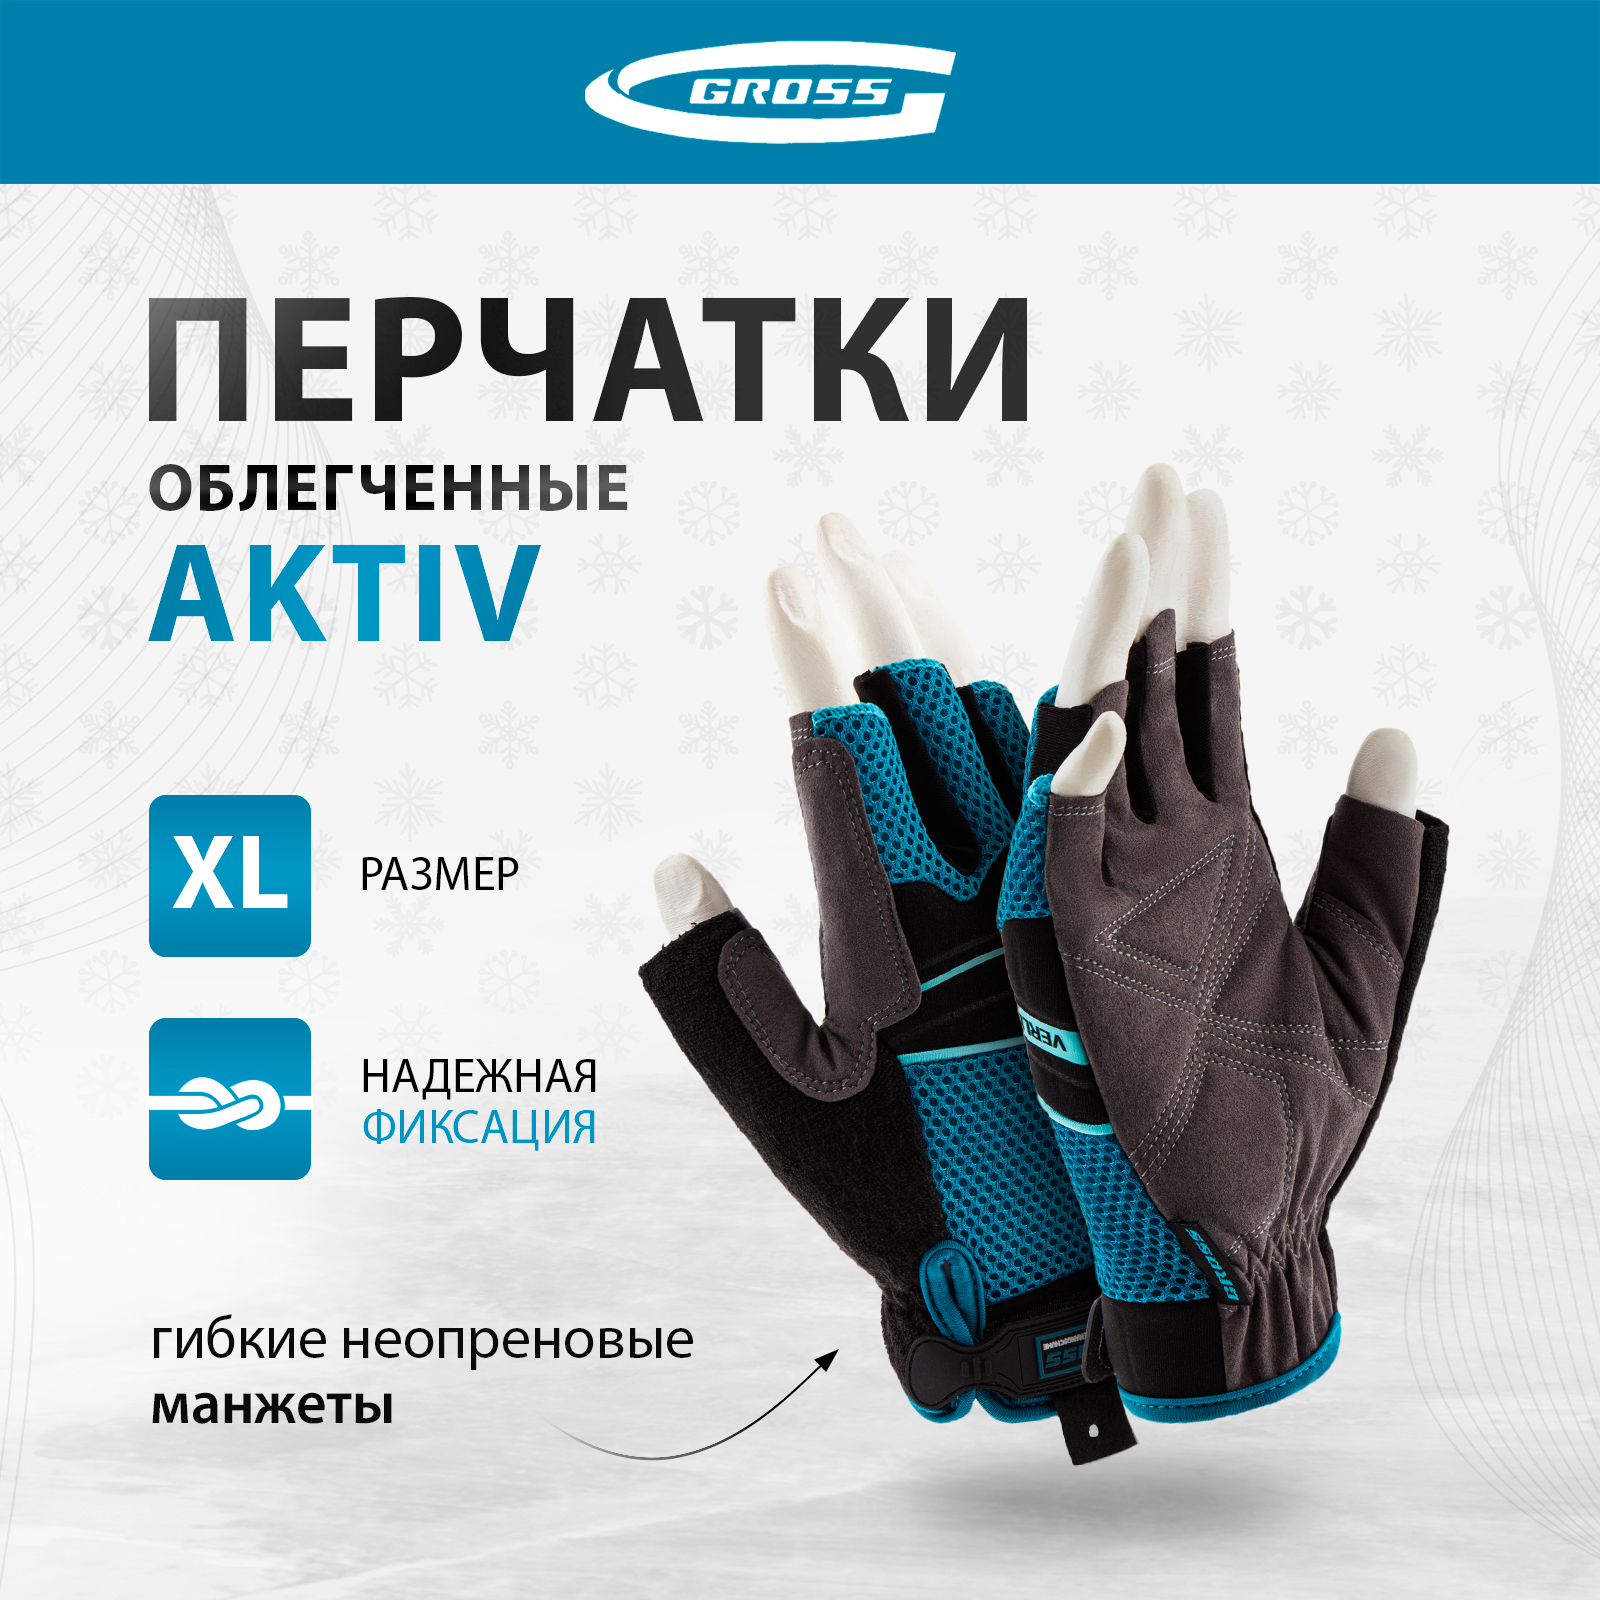 Перчатки комбинированные облегченные GROSS AKTIV открытые пальцыразмер XL (10) 90310 облегченные универсальные грабли